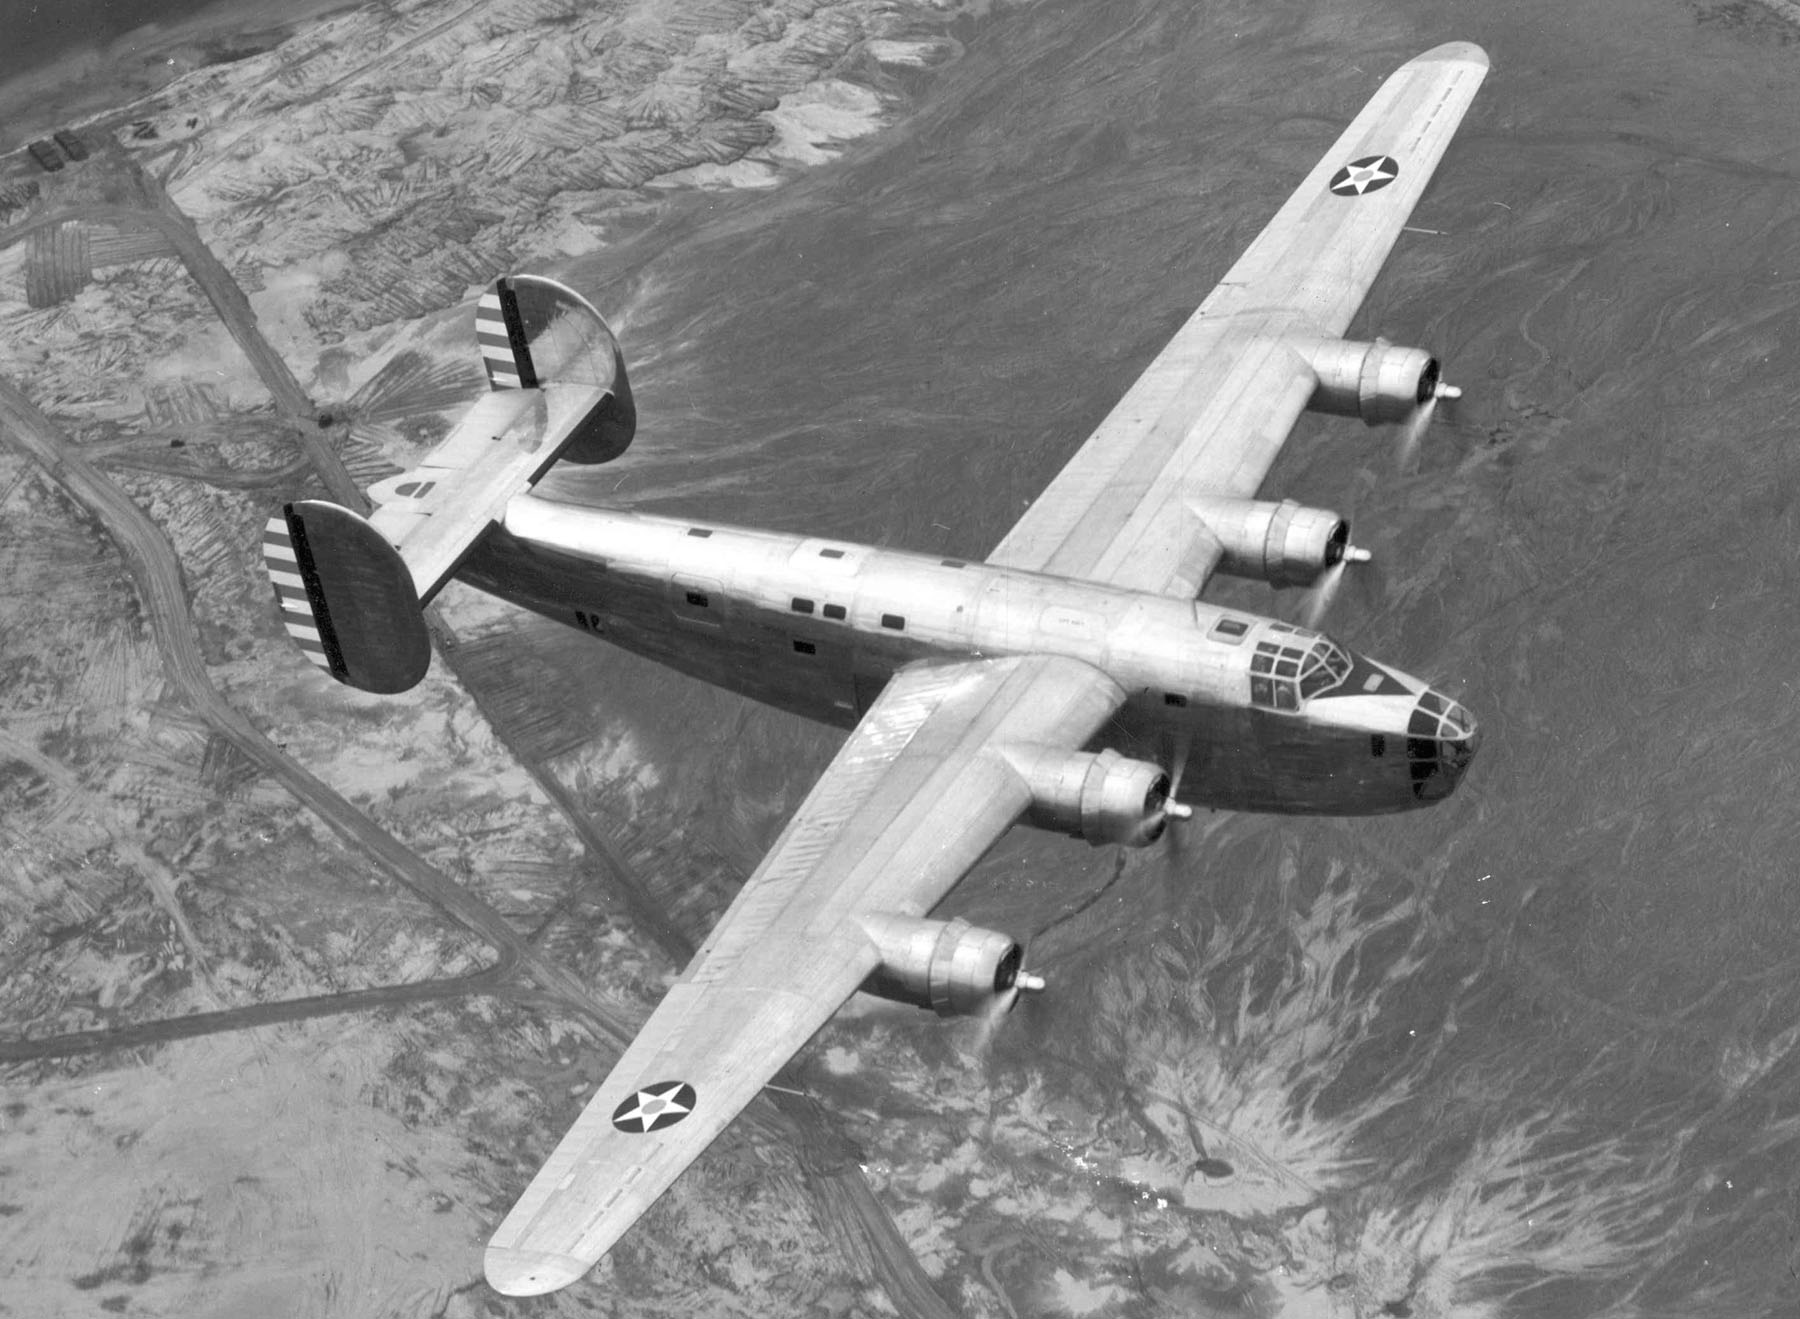 A B-24-es első példánya: akkor még senki nem gondolta, hogy drónként használják majd a négymotorost